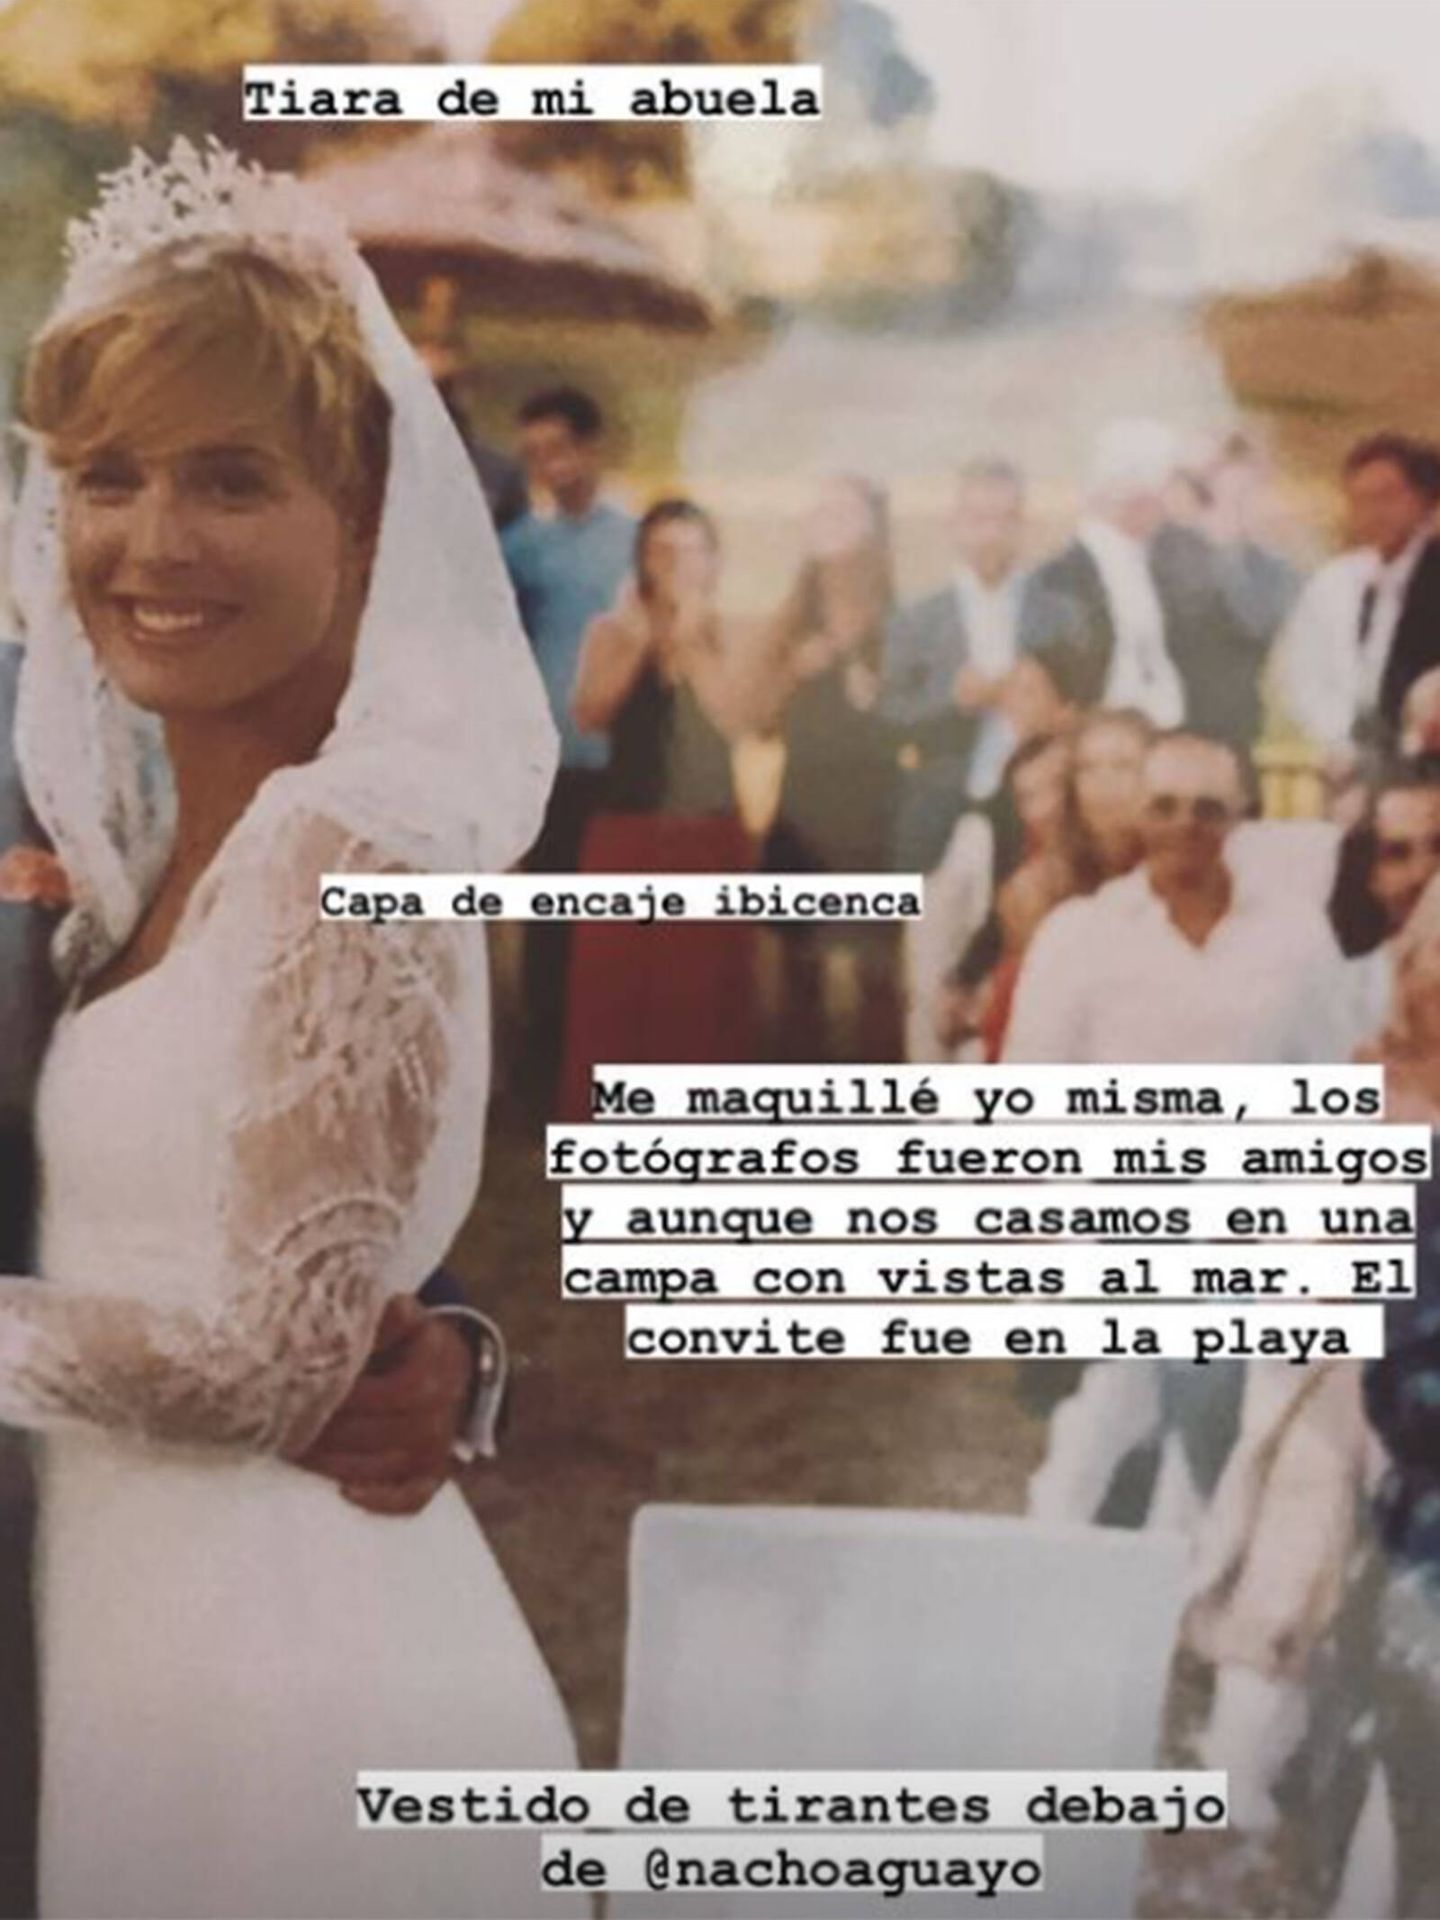 Tania Llasera revela detalles del día de su boda en redes sociales. (Instagram @taniallasera)